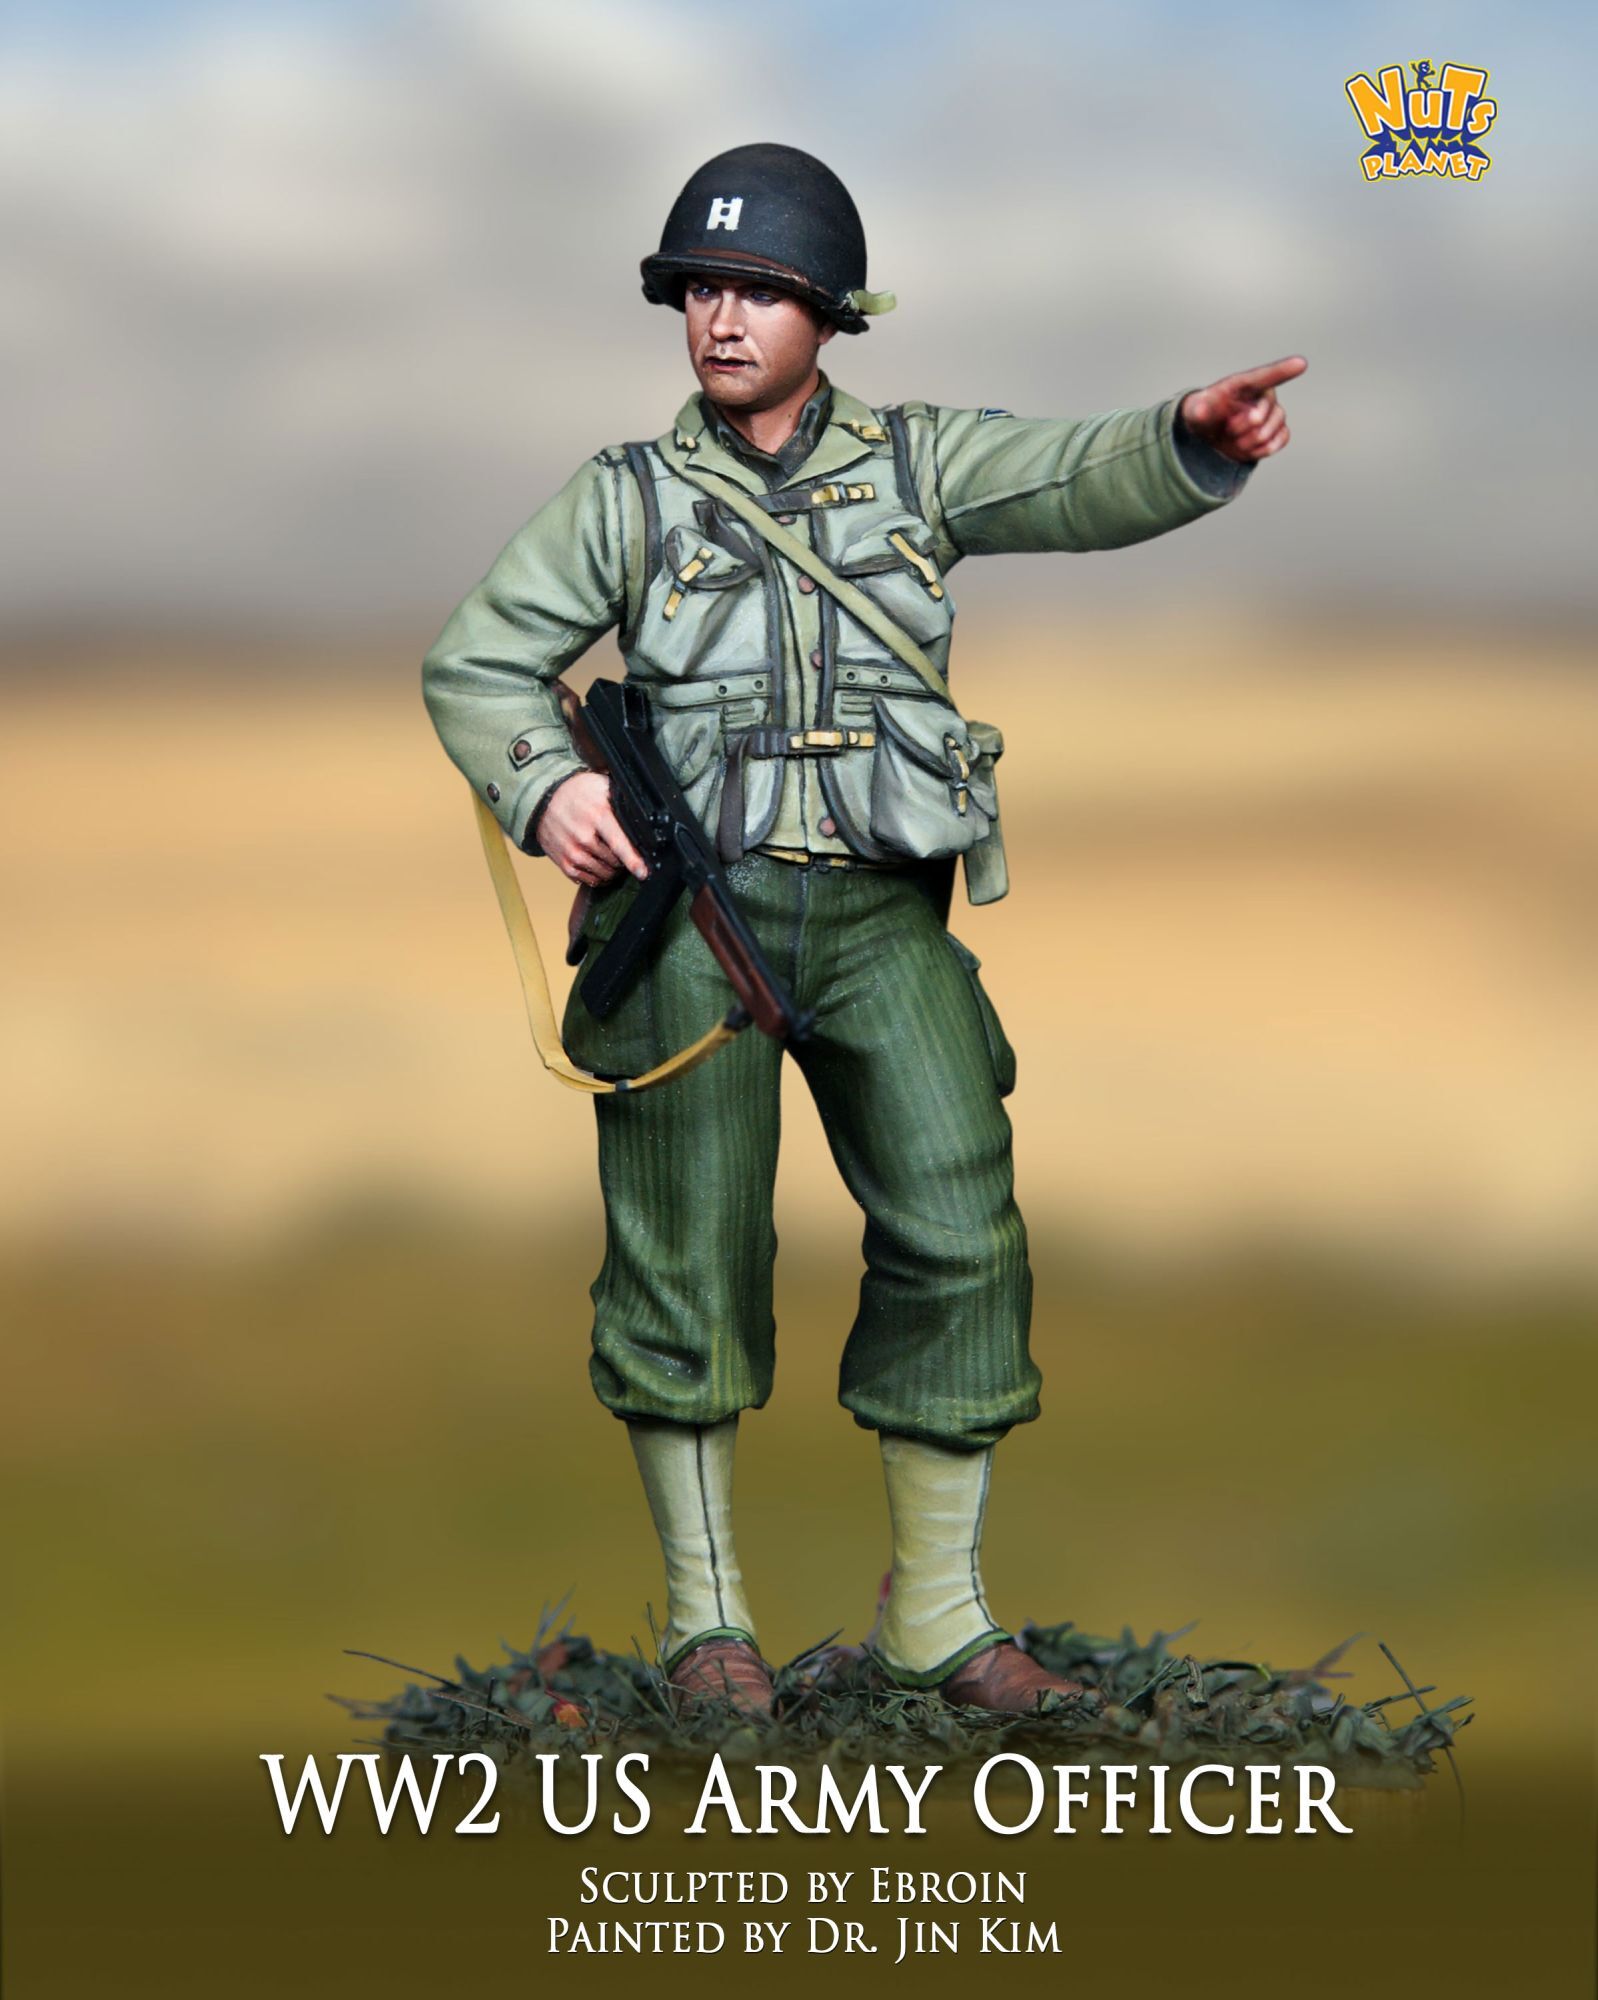 ナッツプラネット[NP-35006]1/35 WWII アメリカ陸軍将校 方角を示す士官